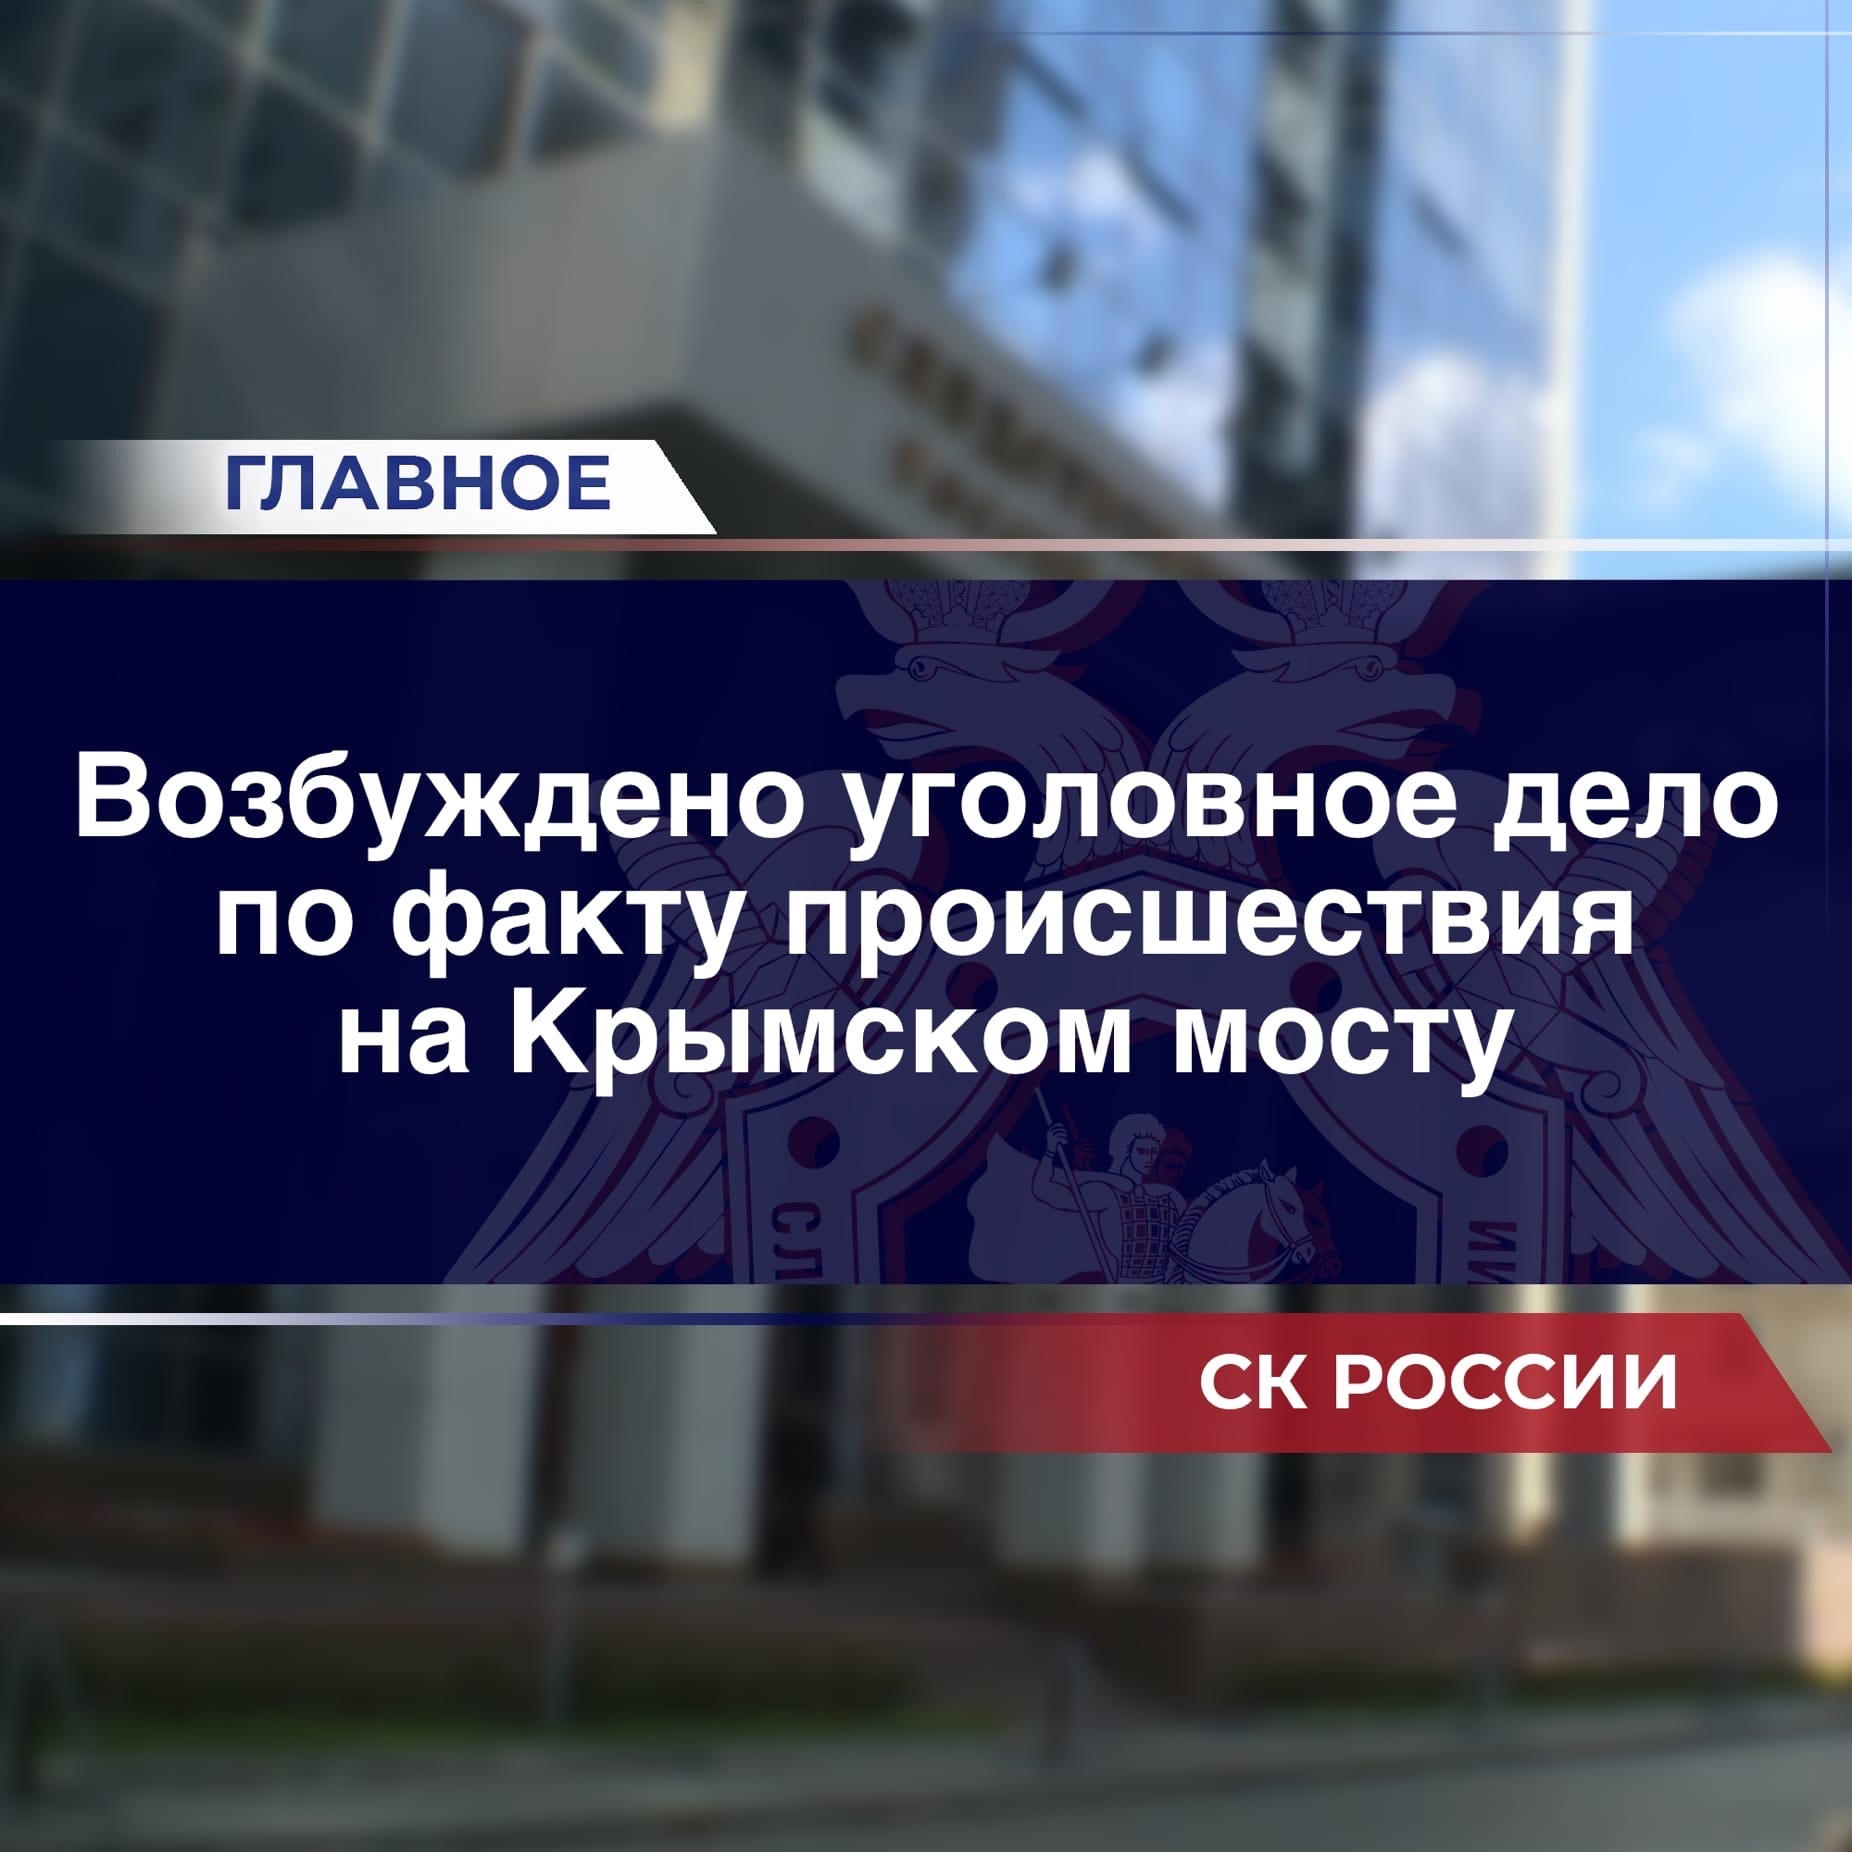 Следственный комитет возбудил уголовное дело после ЧП на Крымском мосту